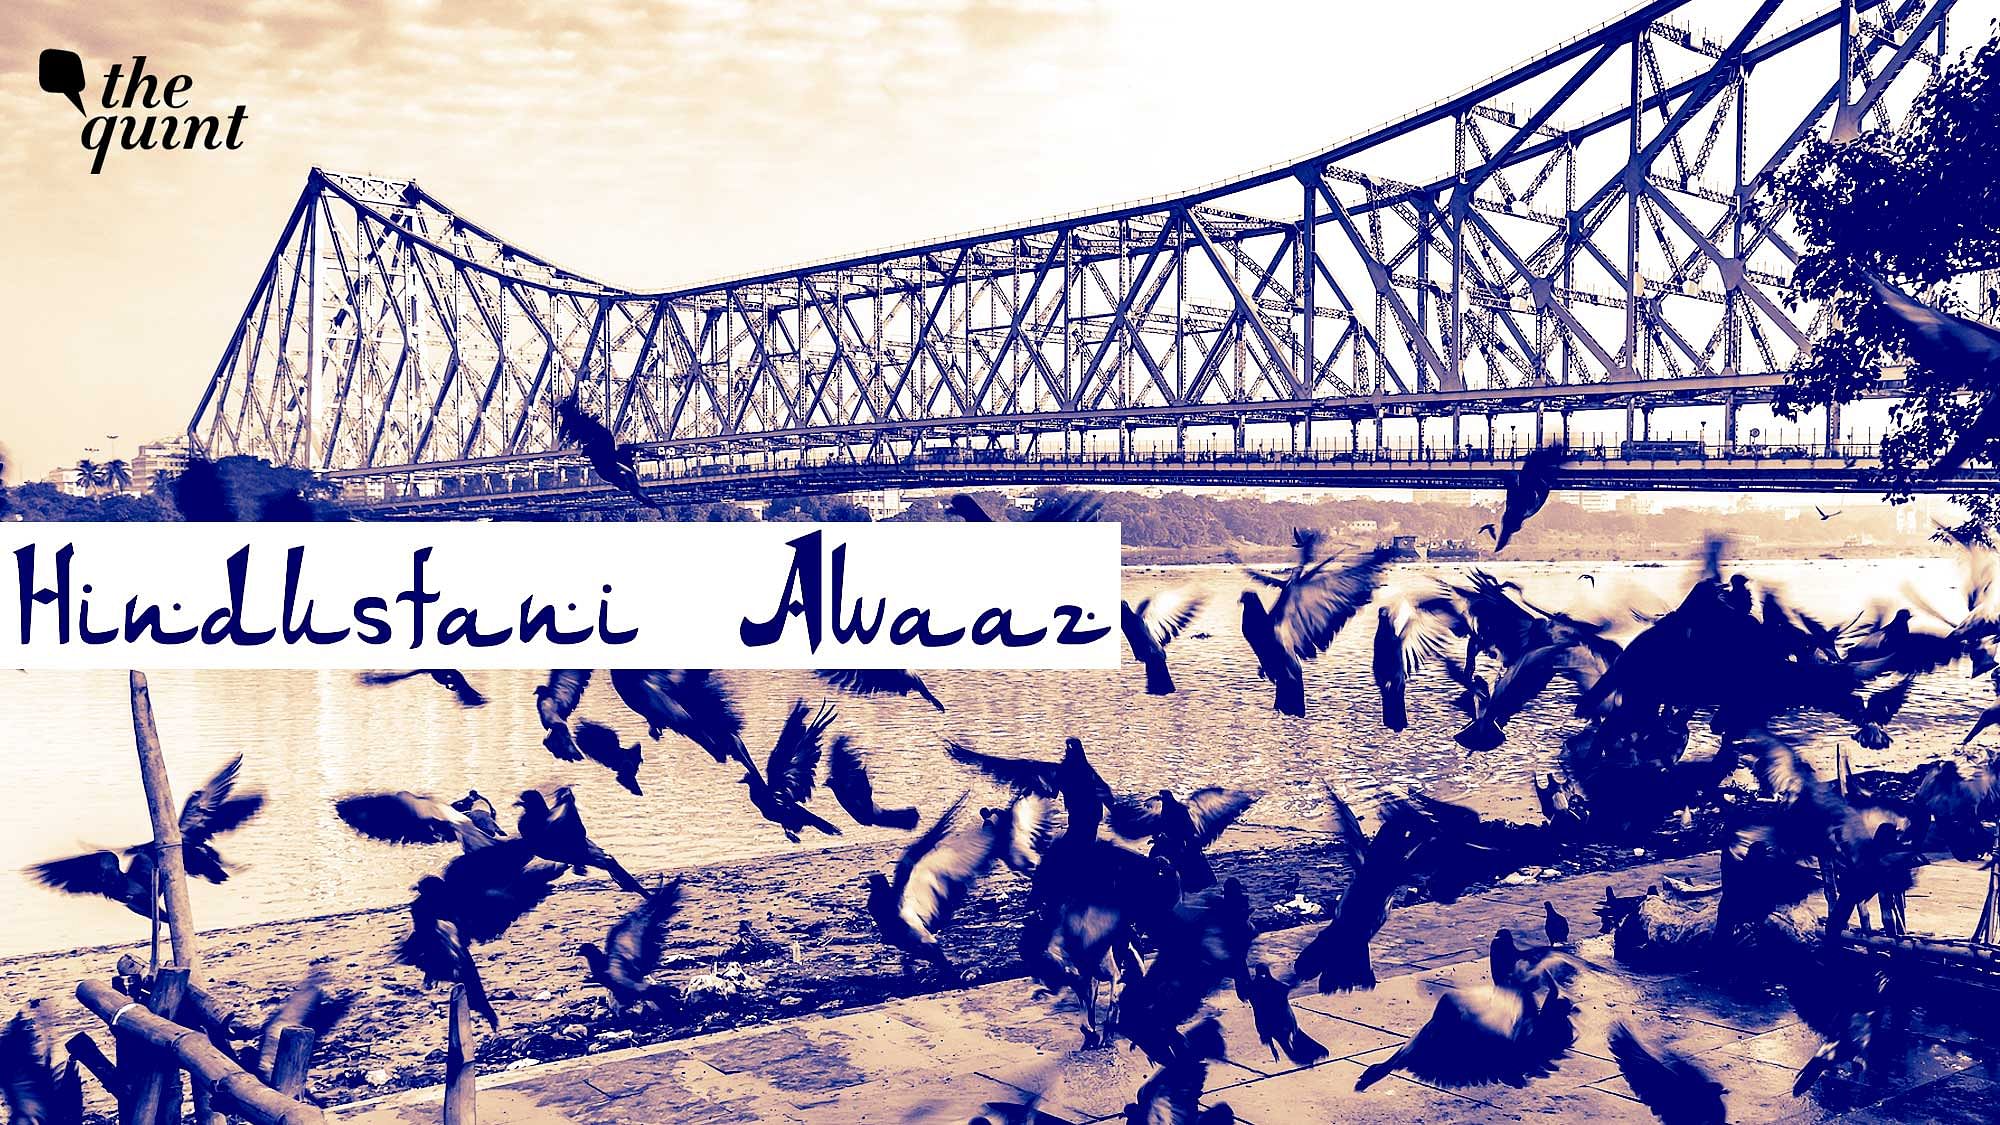 Image of Kolkata’s iconic Howrah Bridge used for representational purposes.